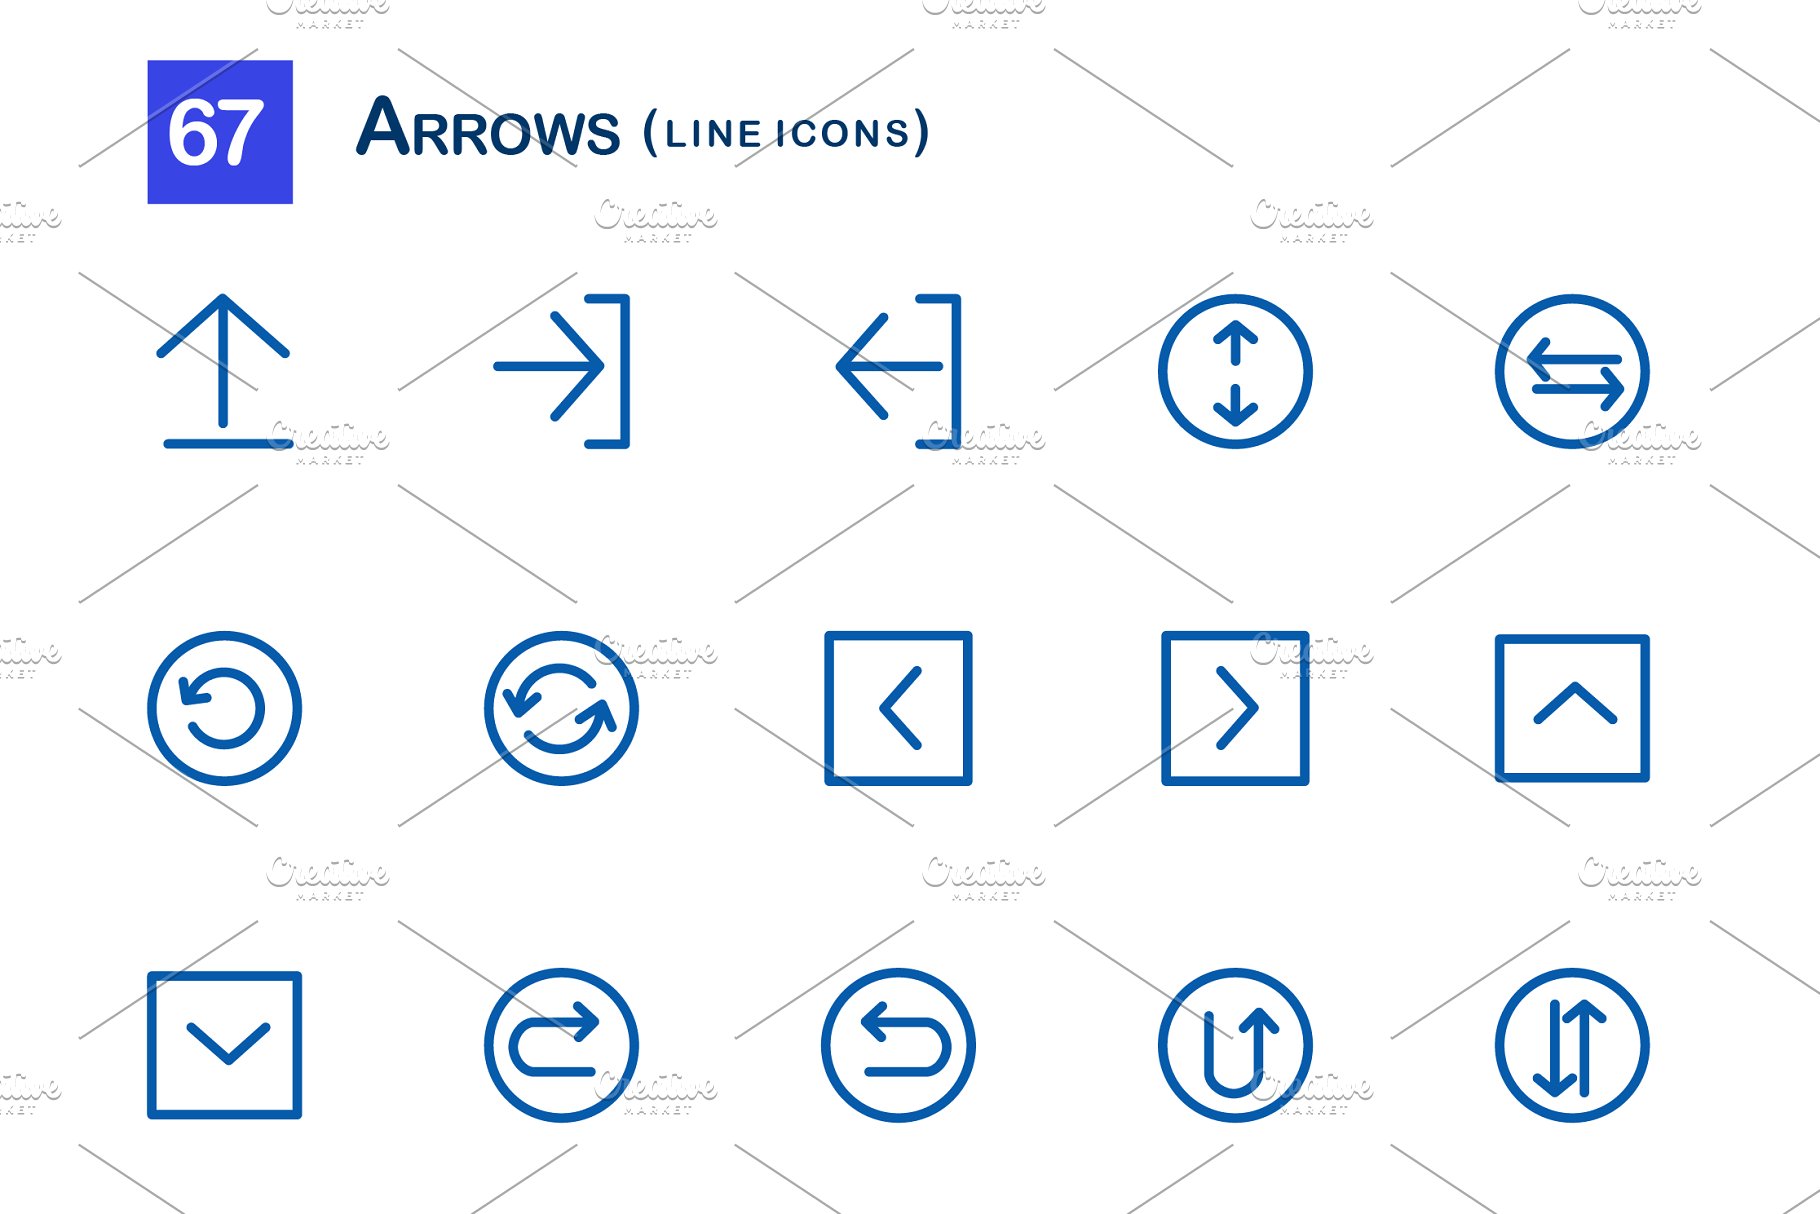 箭头图标素材 67 Arrows Line Icons #9